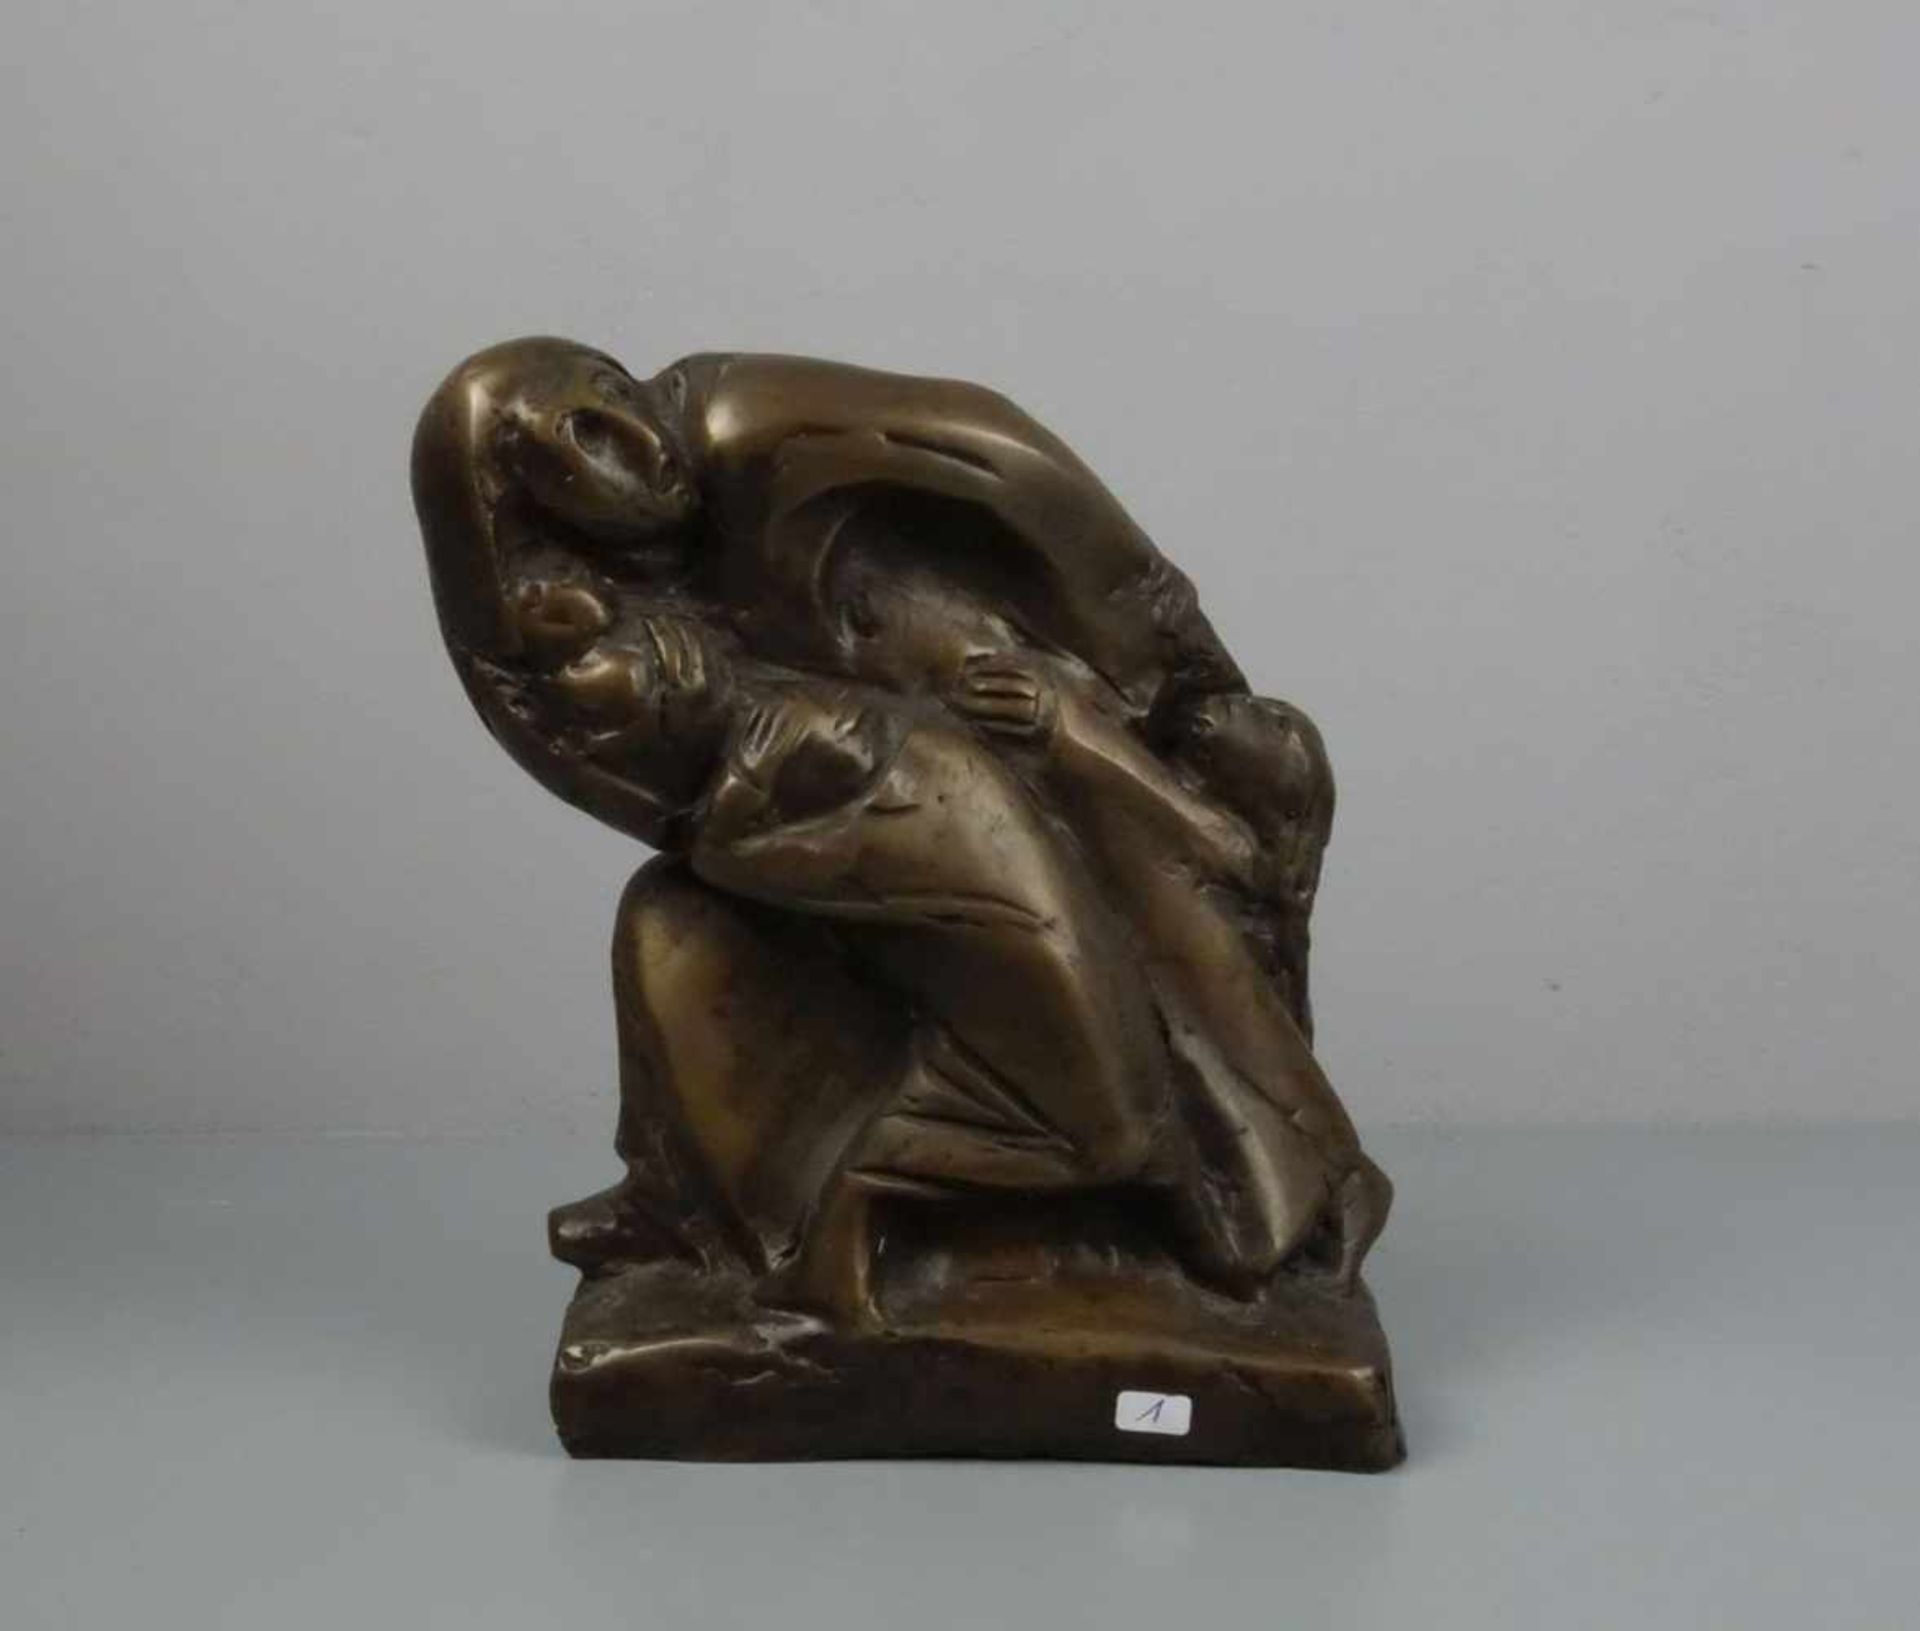 KRAUTWALD, JOSEPH (Borkenstadt / Oberschlesien 1914-2003 Rheine), Skulptur: "Die Flucht", 1955 (